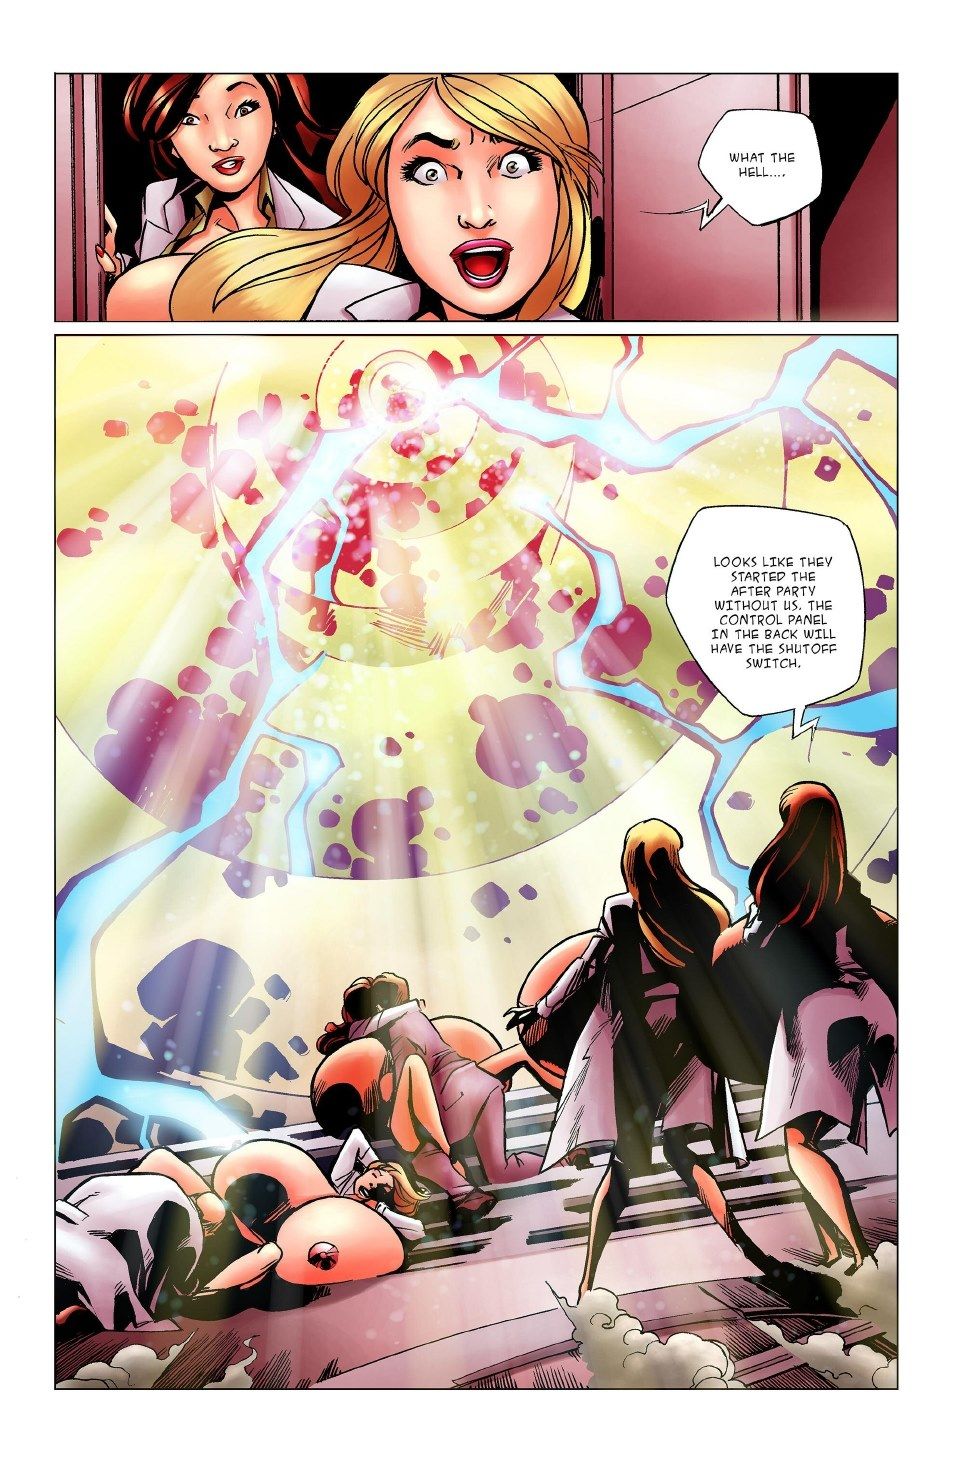 बीओटी कॉमिक्स कोलाइडर द्वितीय page 1